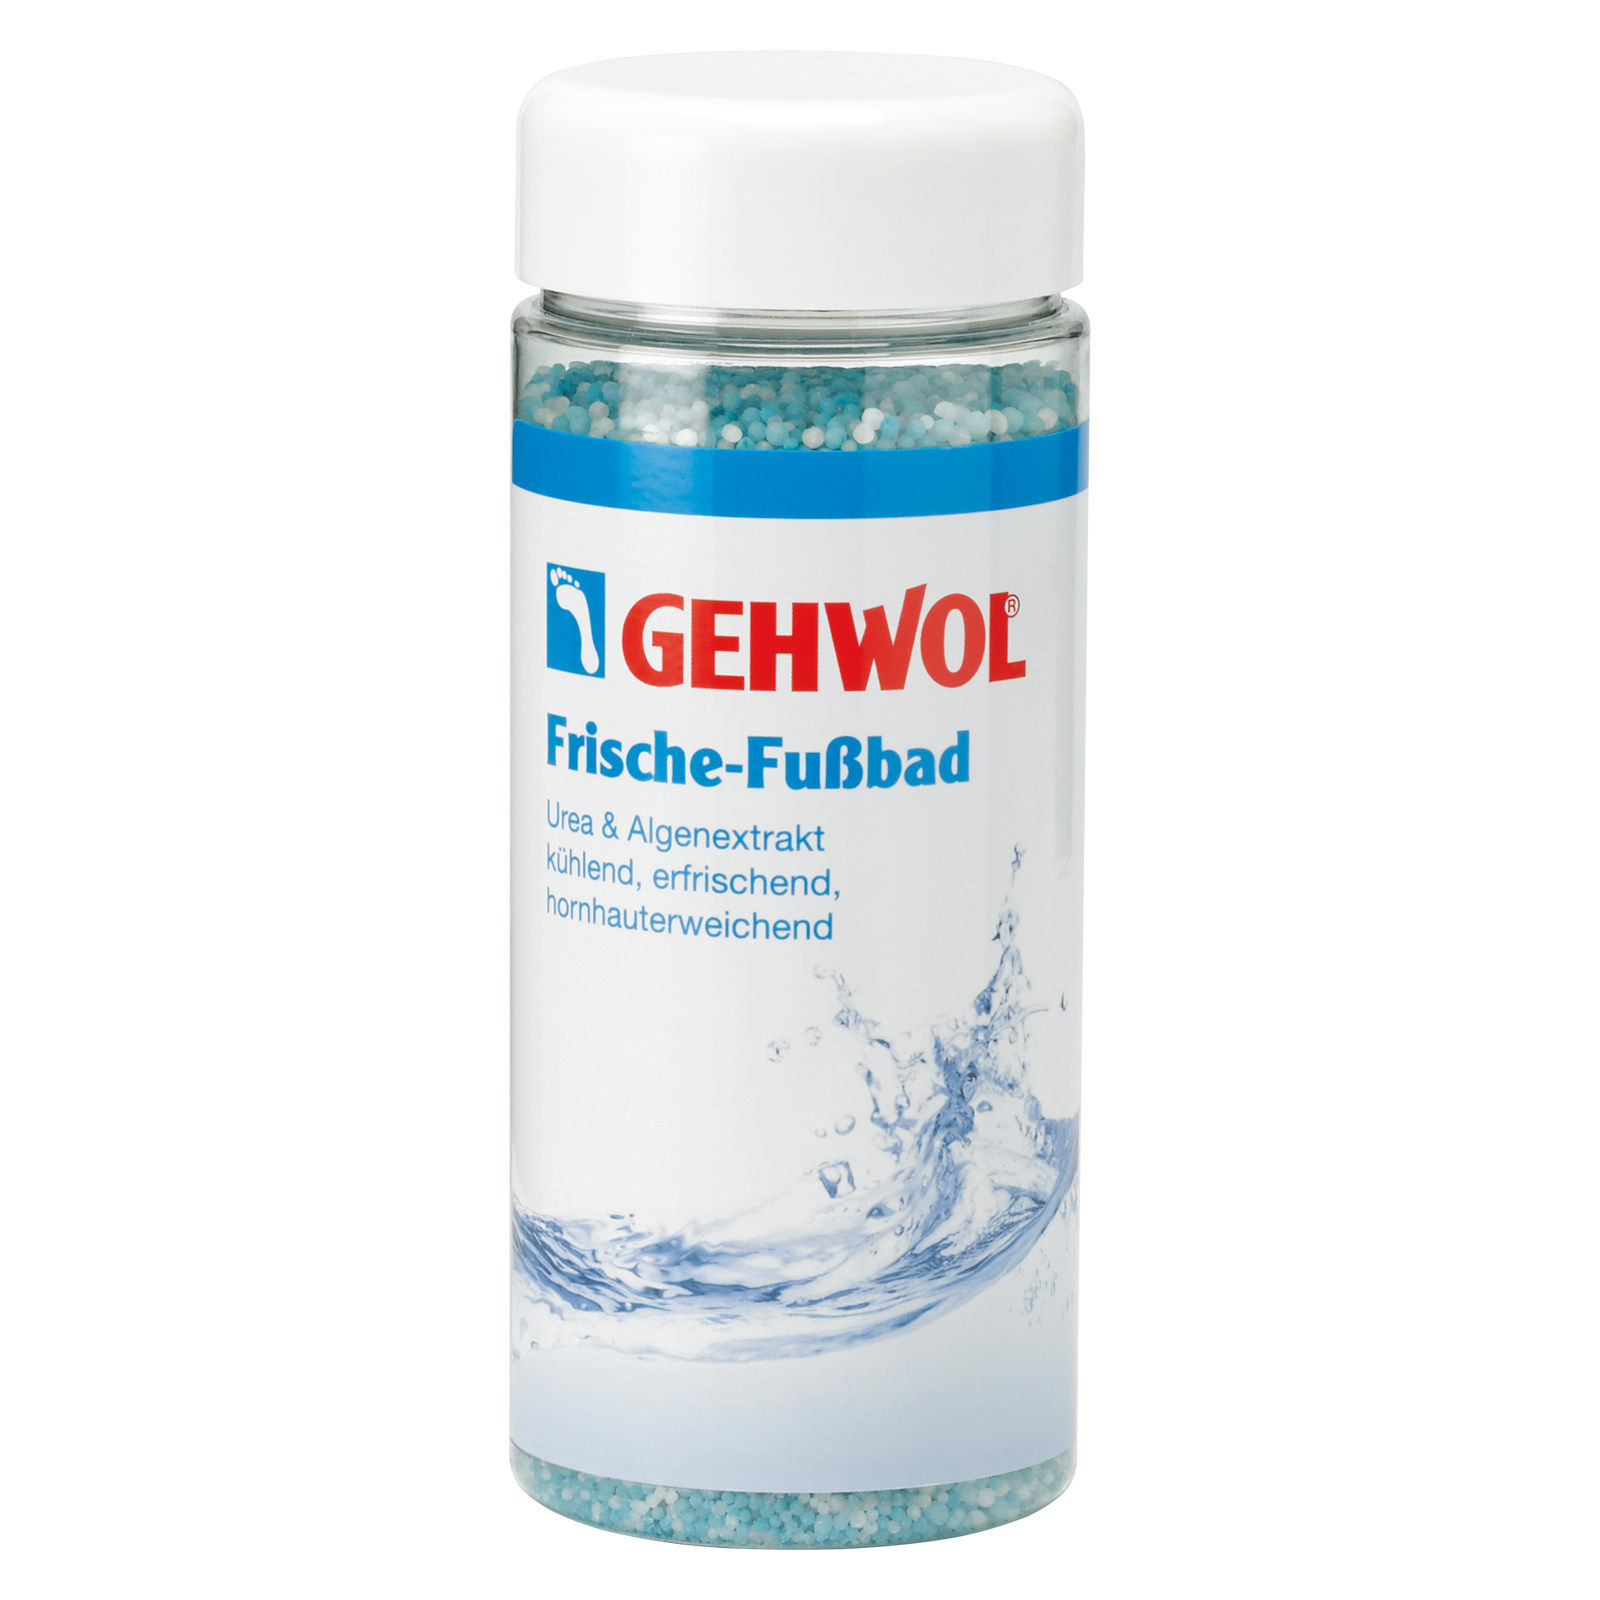 Image of GEHWOL Frische-Fussbad (330g)